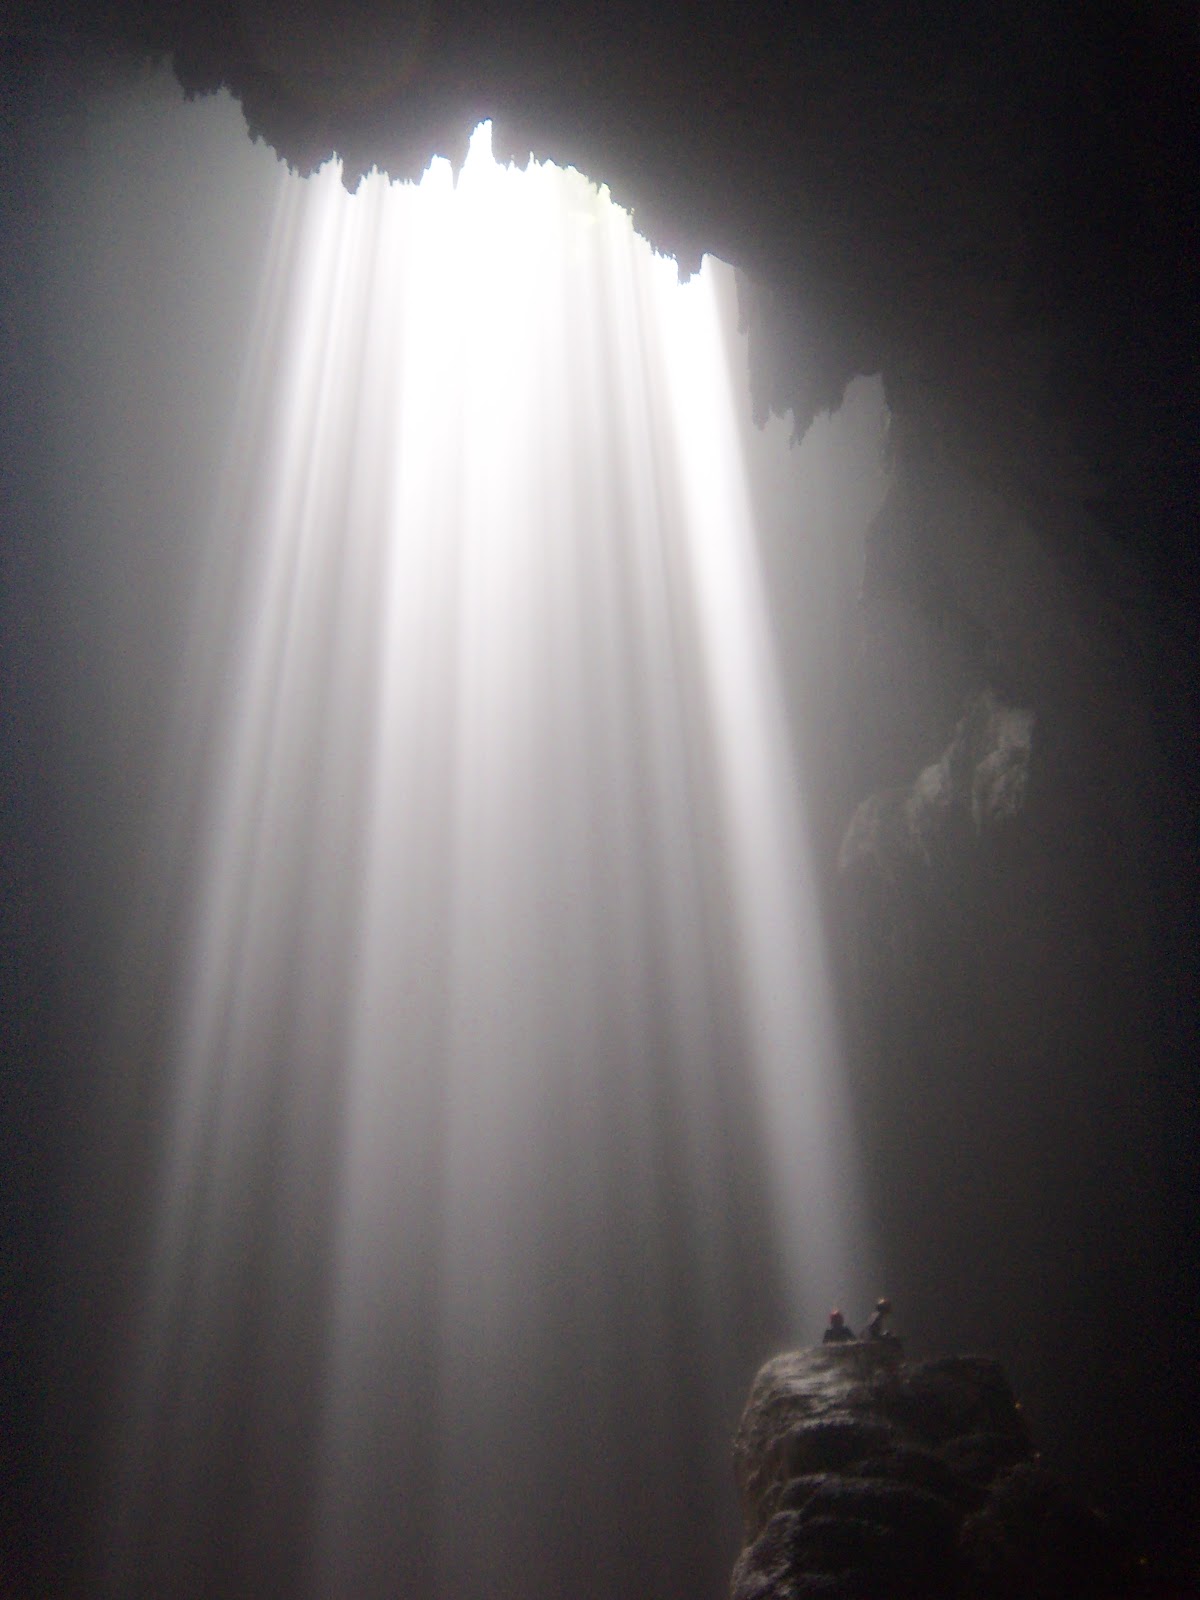 Light From Heaven at Luweng Grubuk